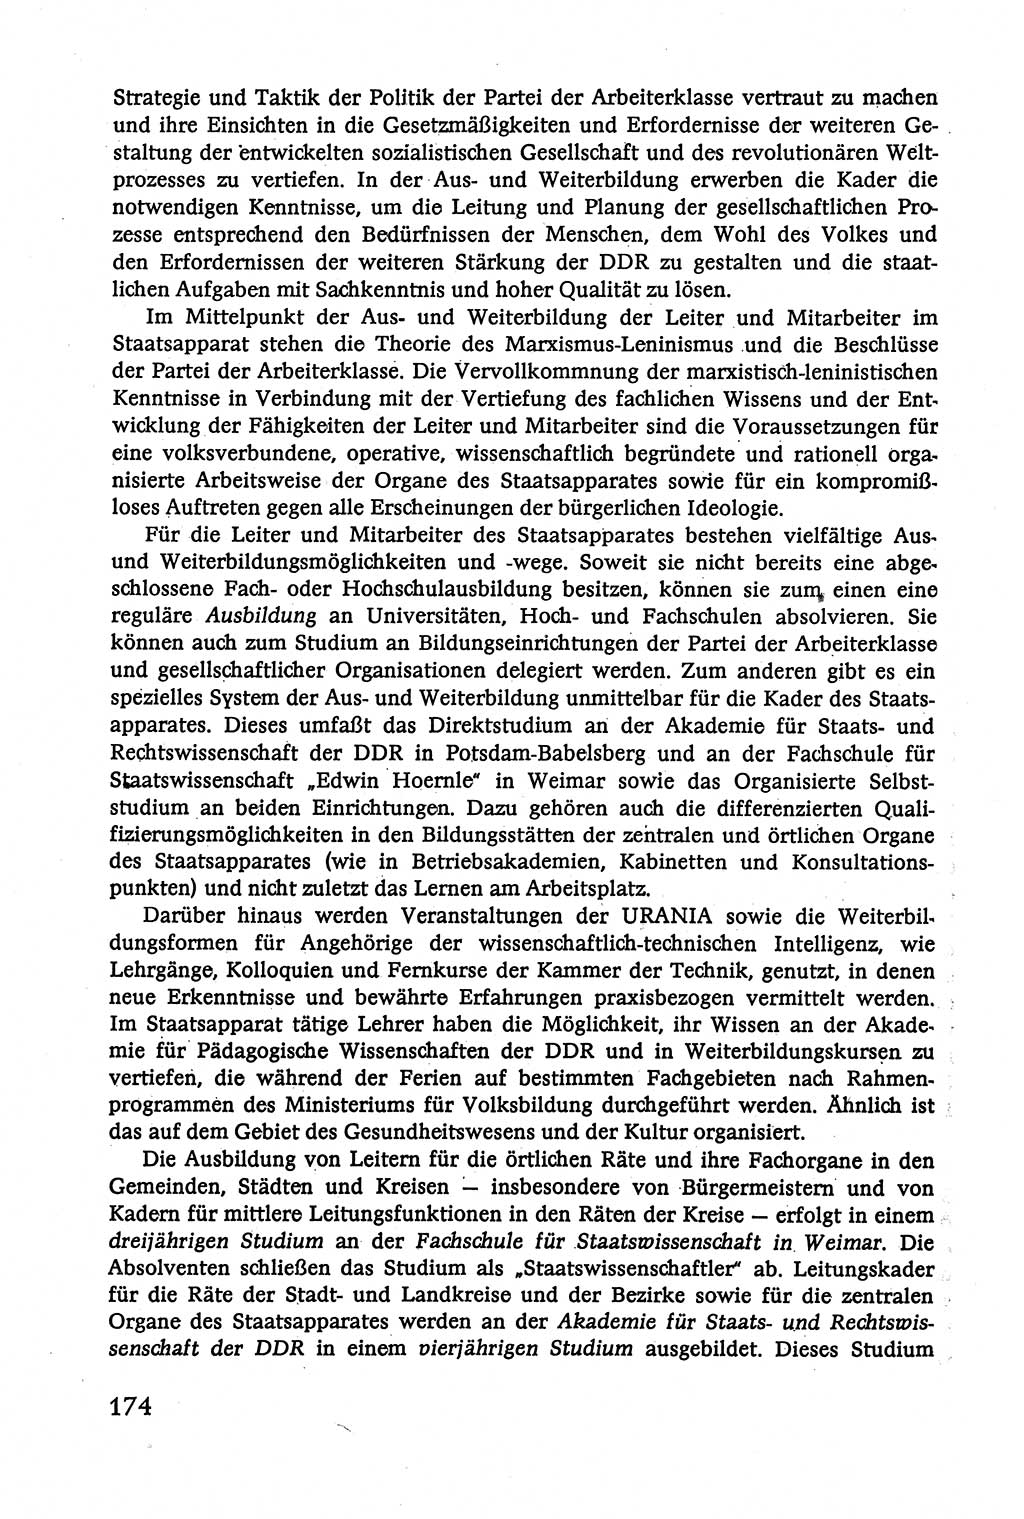 Verwaltungsrecht [Deutsche Demokratische Republik (DDR)], Lehrbuch 1979, Seite 174 (Verw.-R. DDR Lb. 1979, S. 174)